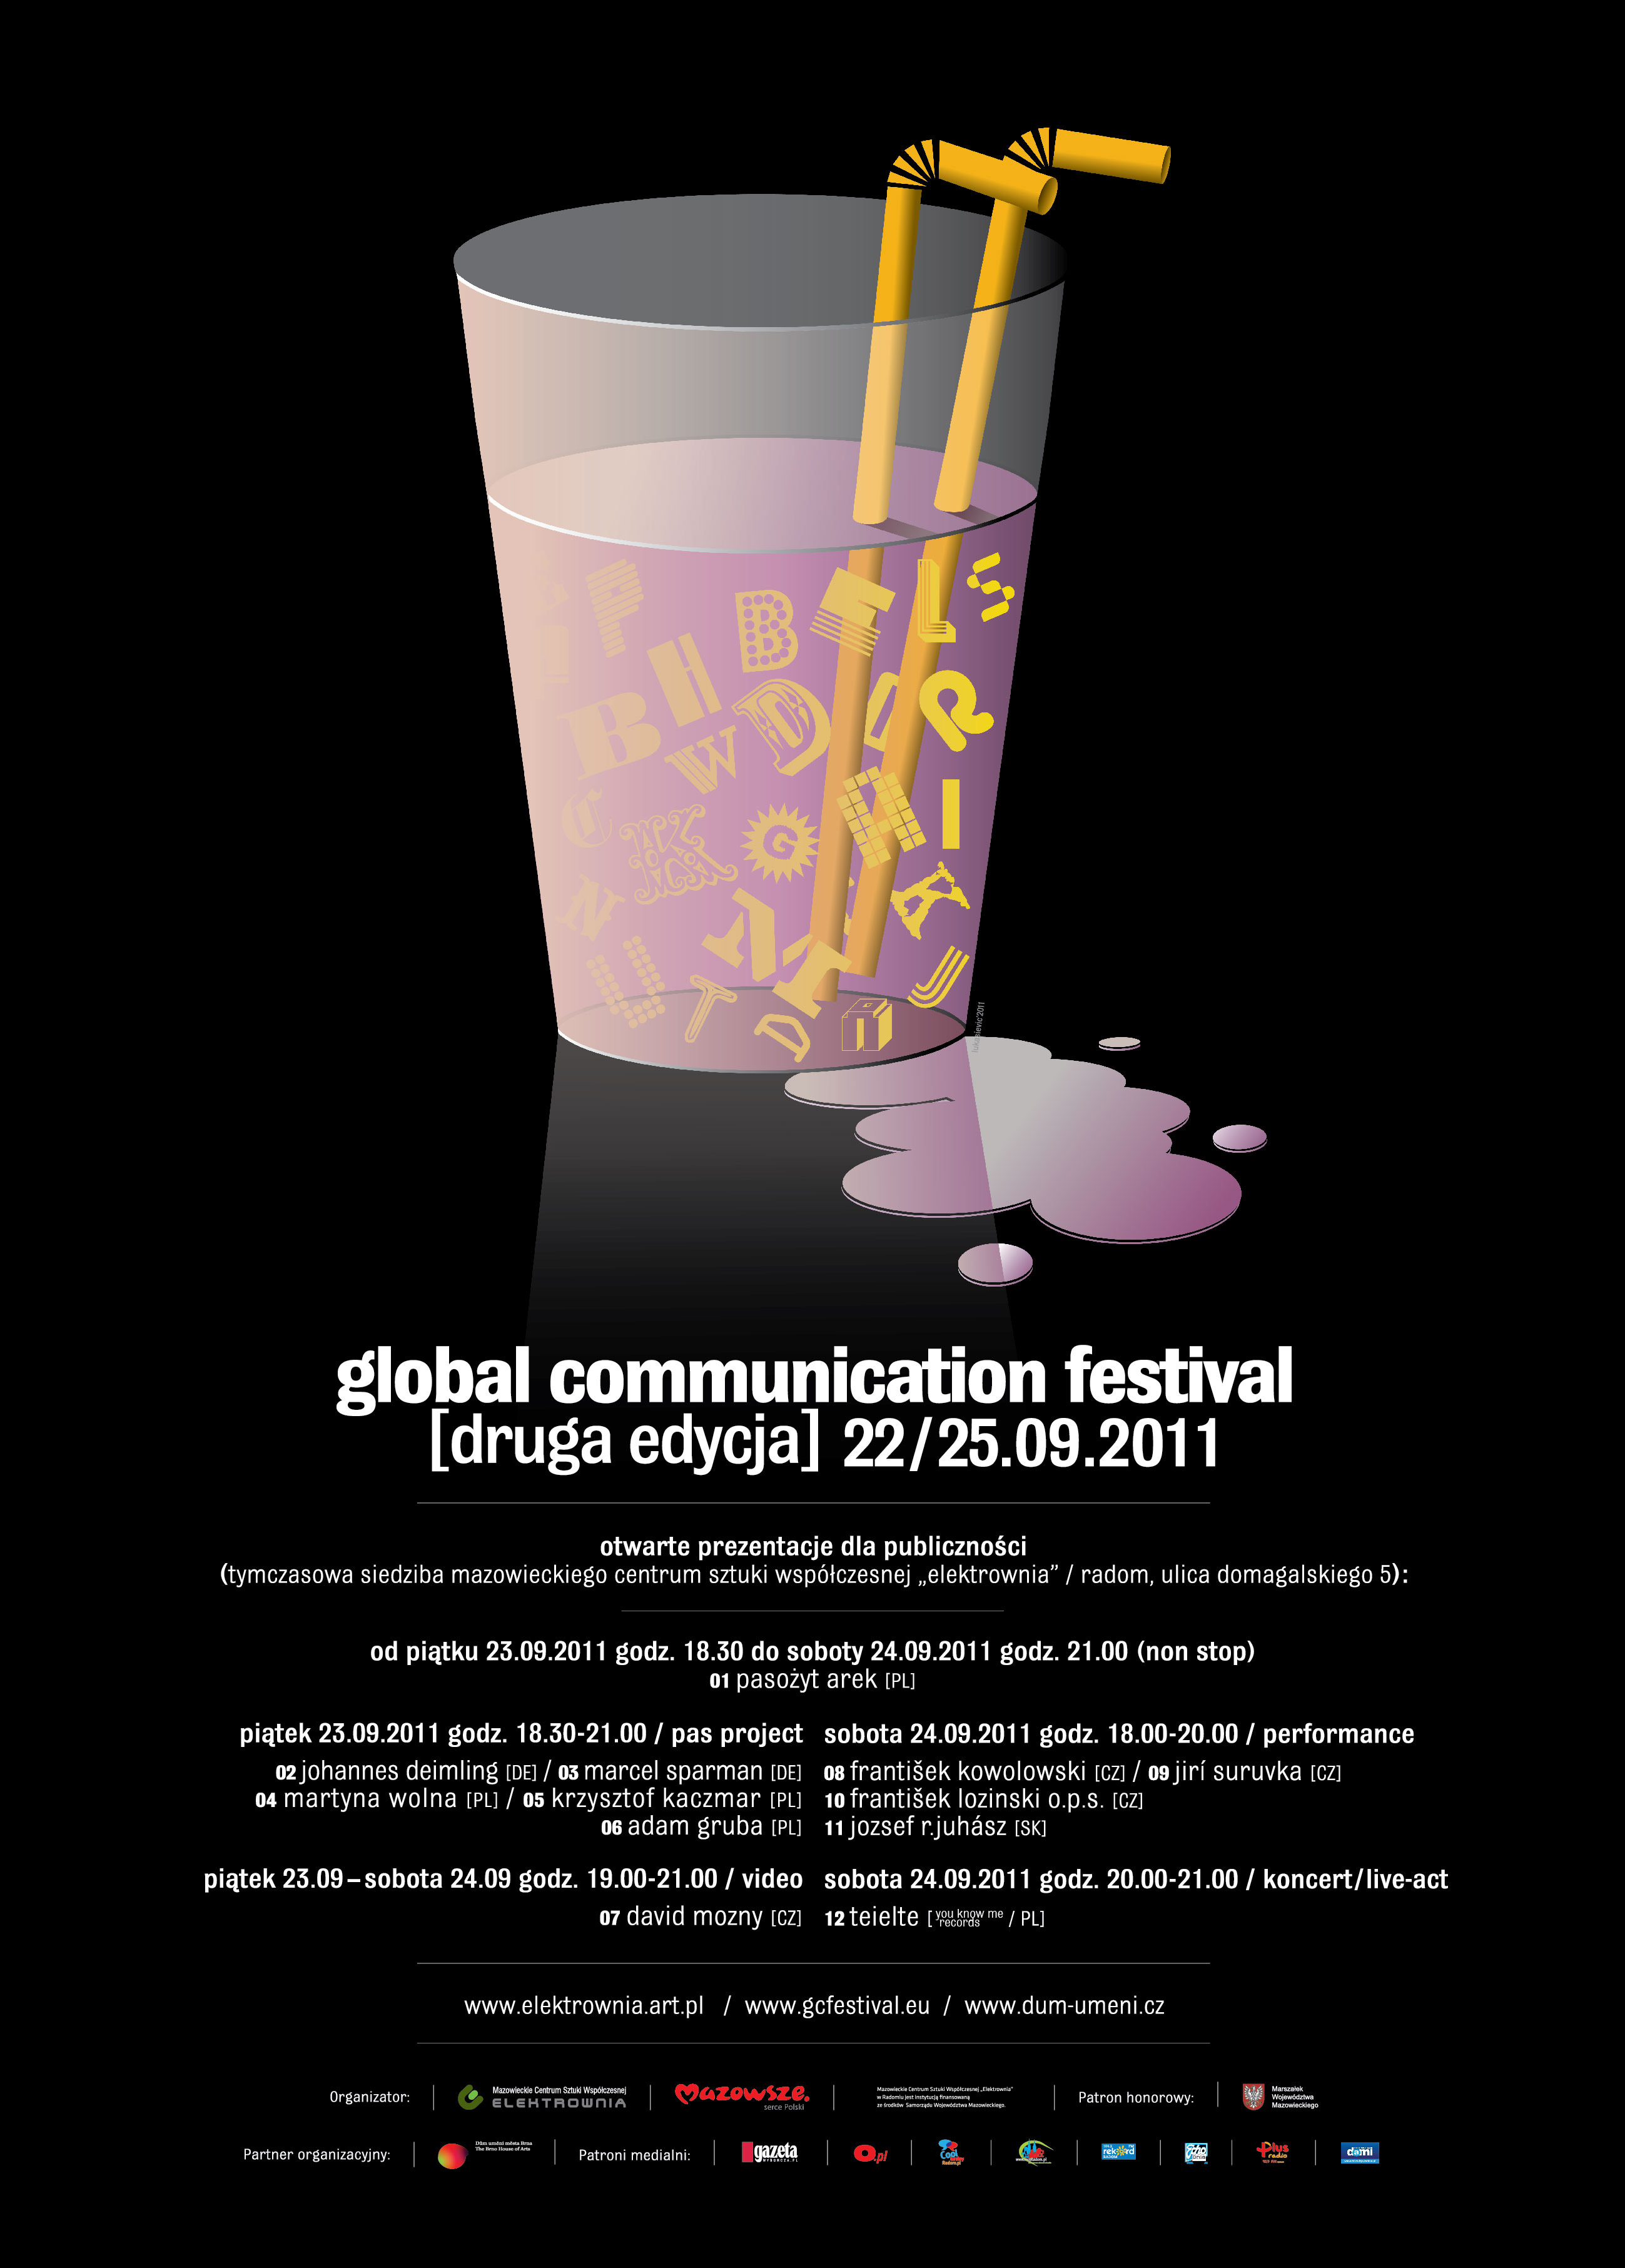 Global Communication 2011 - plakat (źródło: materiały prasowe CSW Elektrownia))